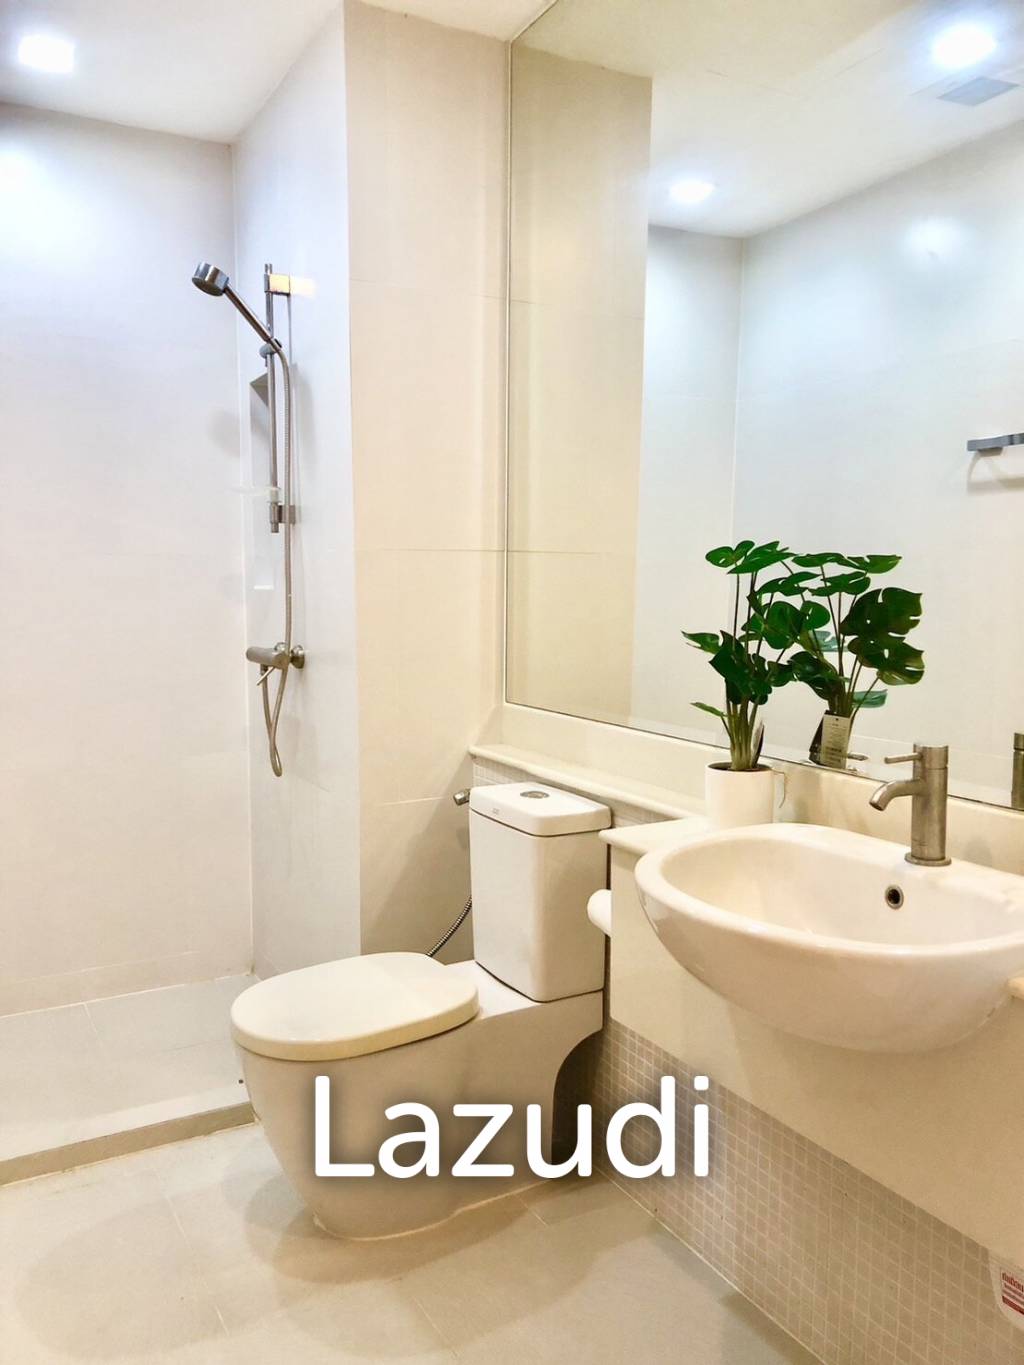 2 Bedroom 2 Bathroom 75 Sqm. at Khao Takiab area in Hua Hin